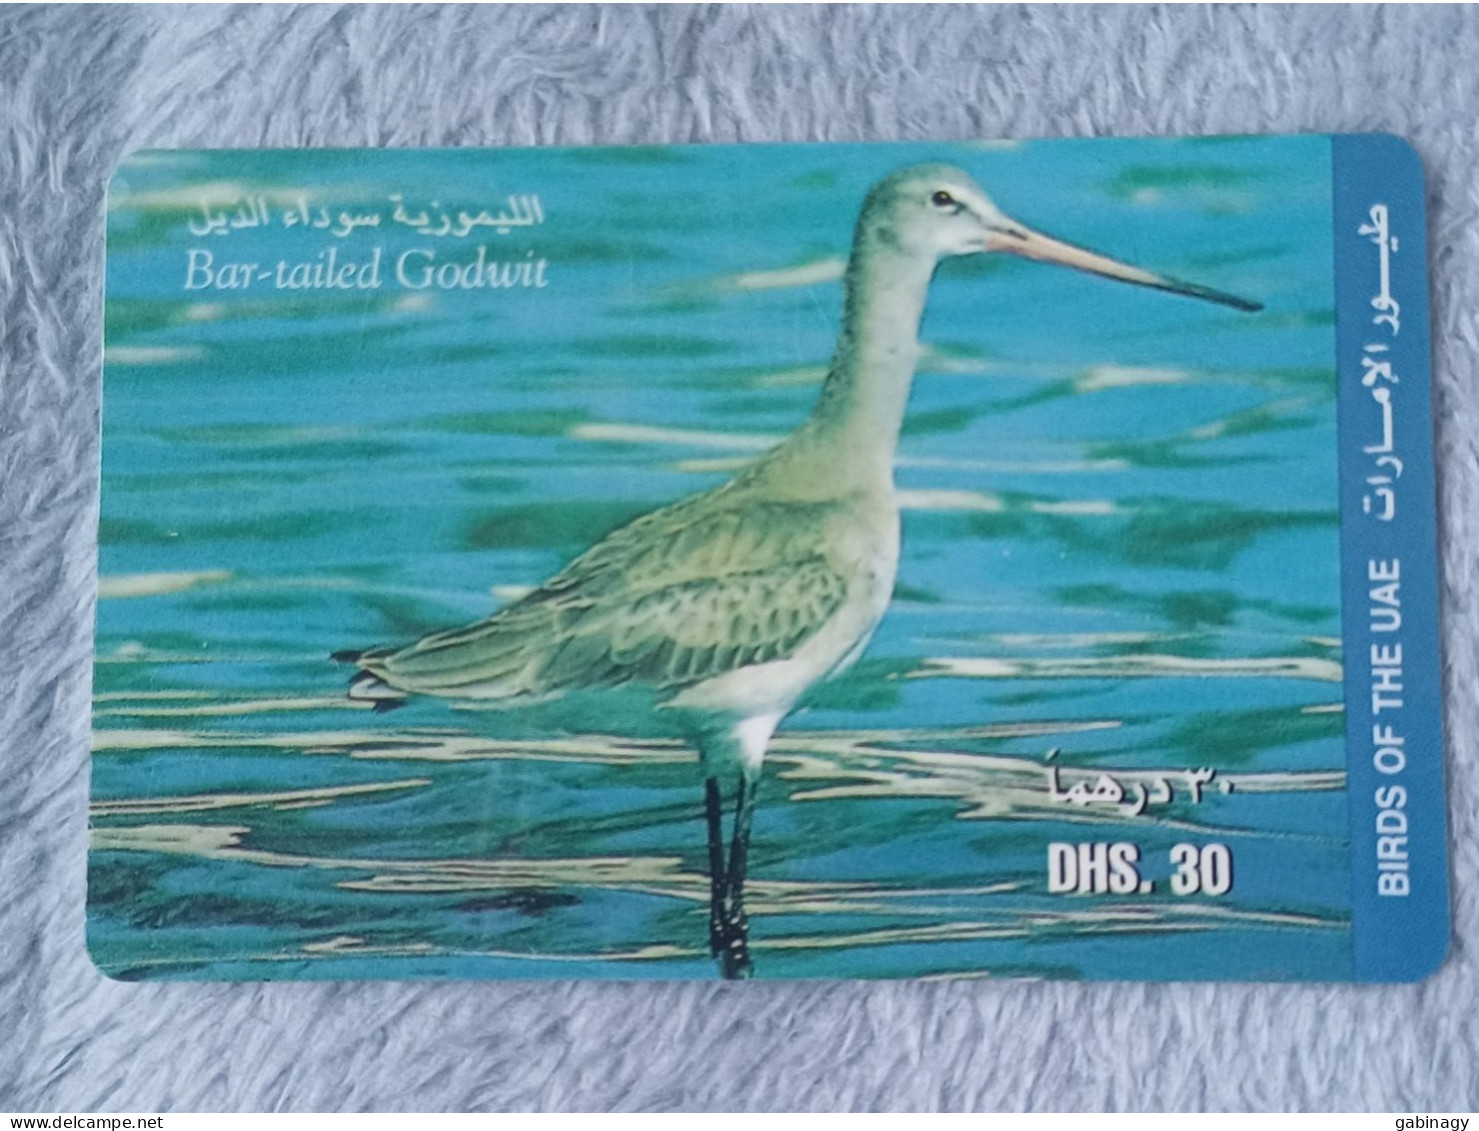 UAE - 2 CARDS OF BIRDS - United Arab Emirates